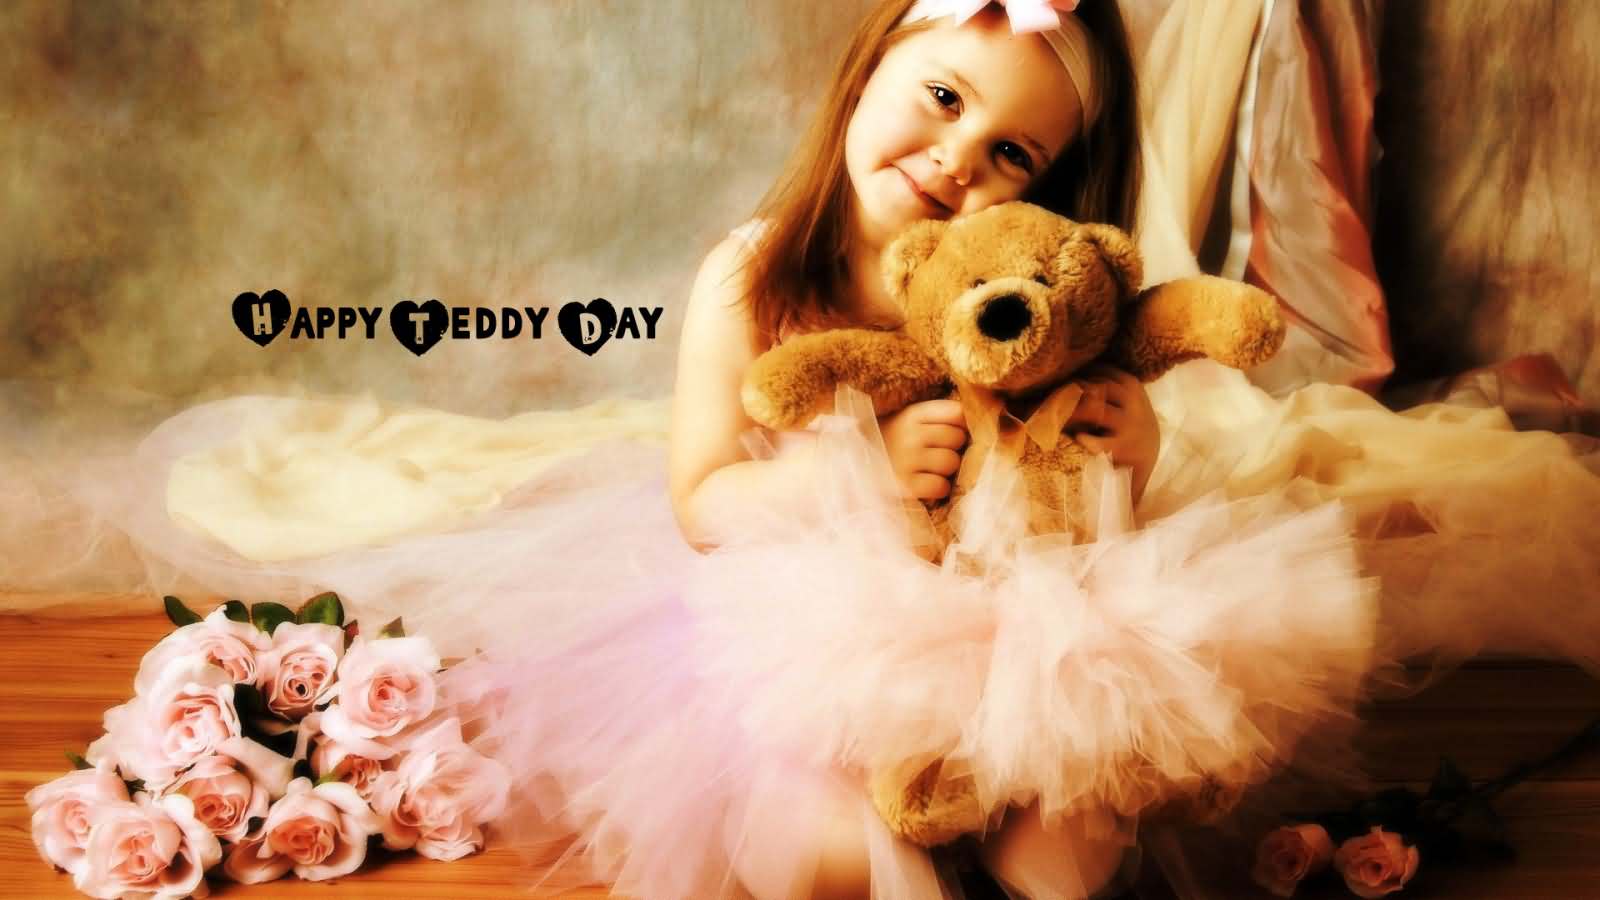 Happy teddy day cute girl with teddy bear